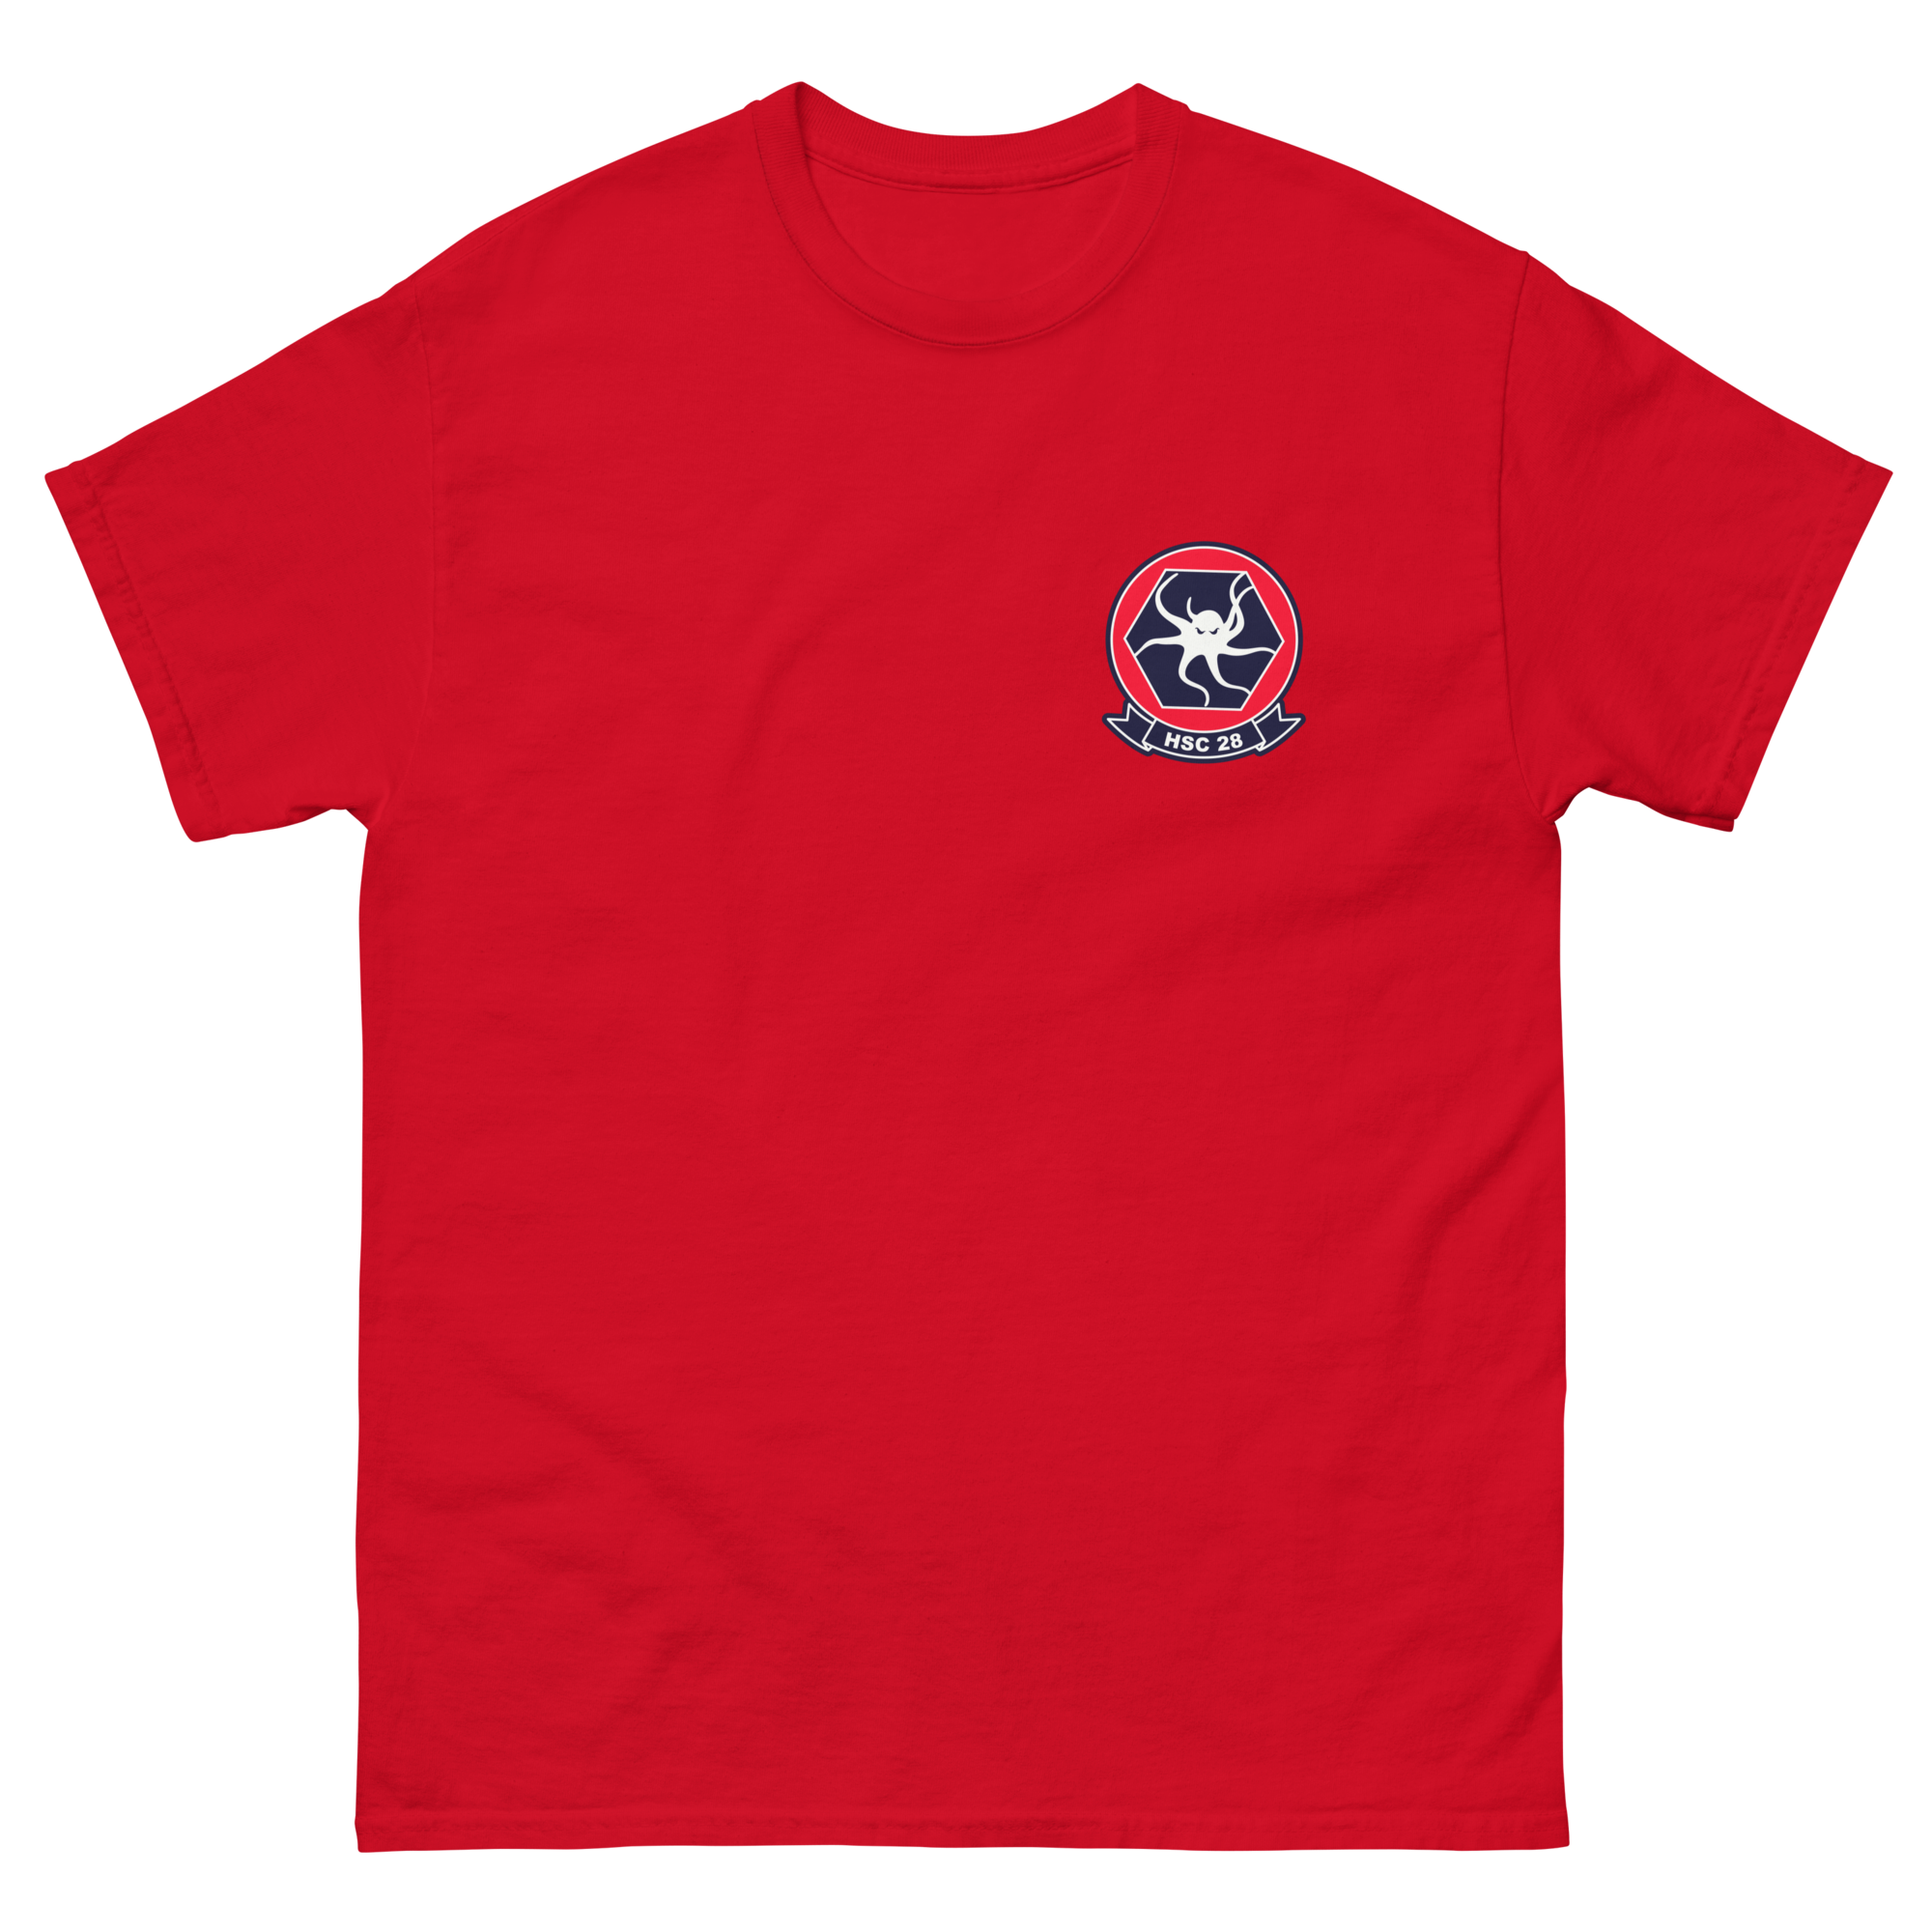 HSC-28 Dragon Whales Squadron Crest T-Shirt